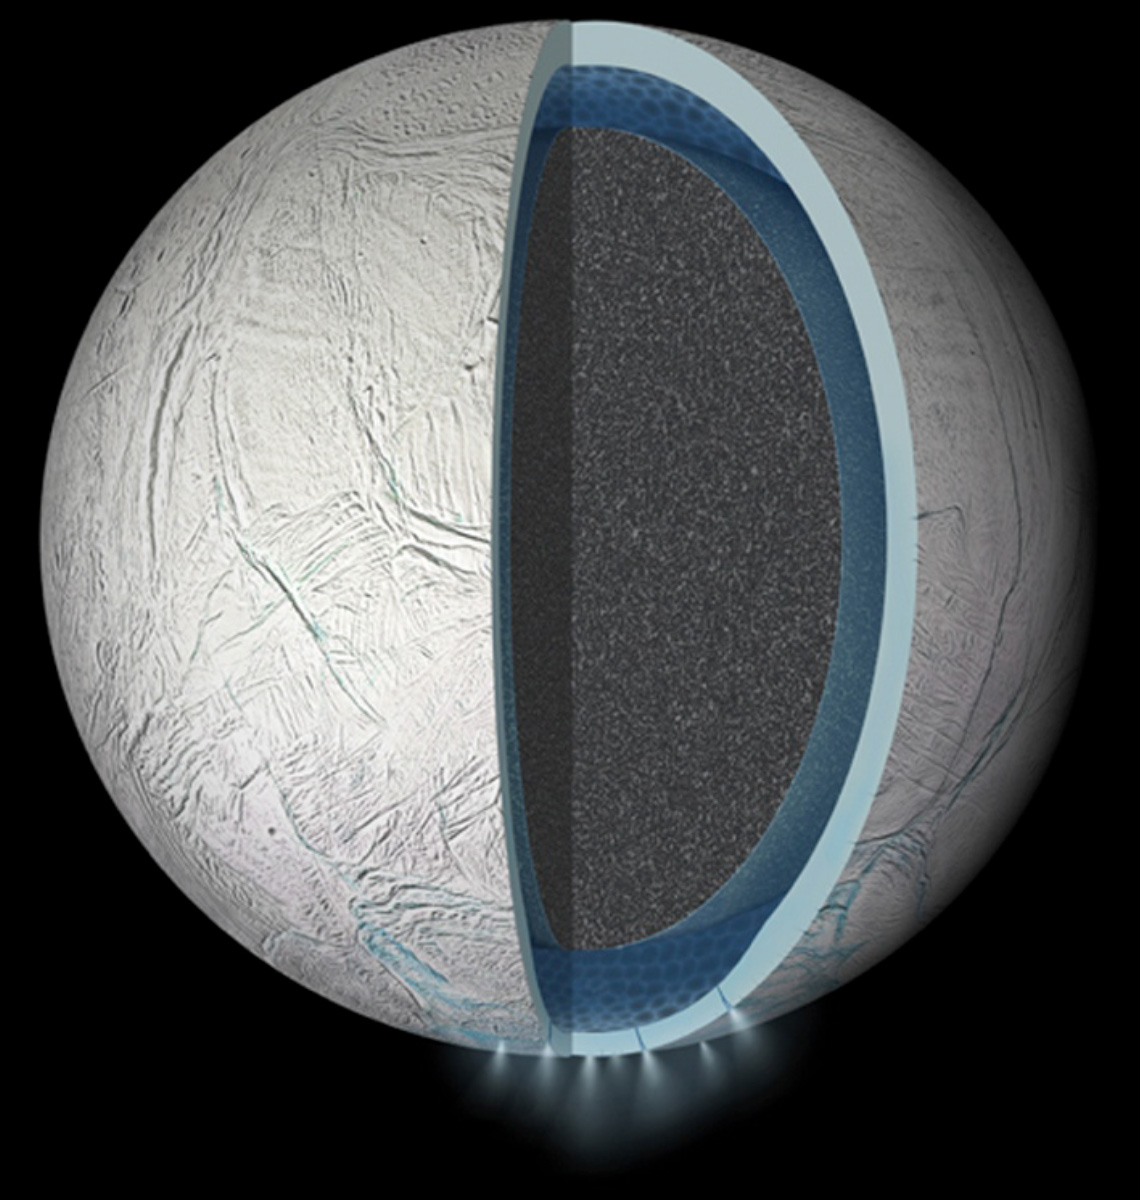 Enceladus is Simpler